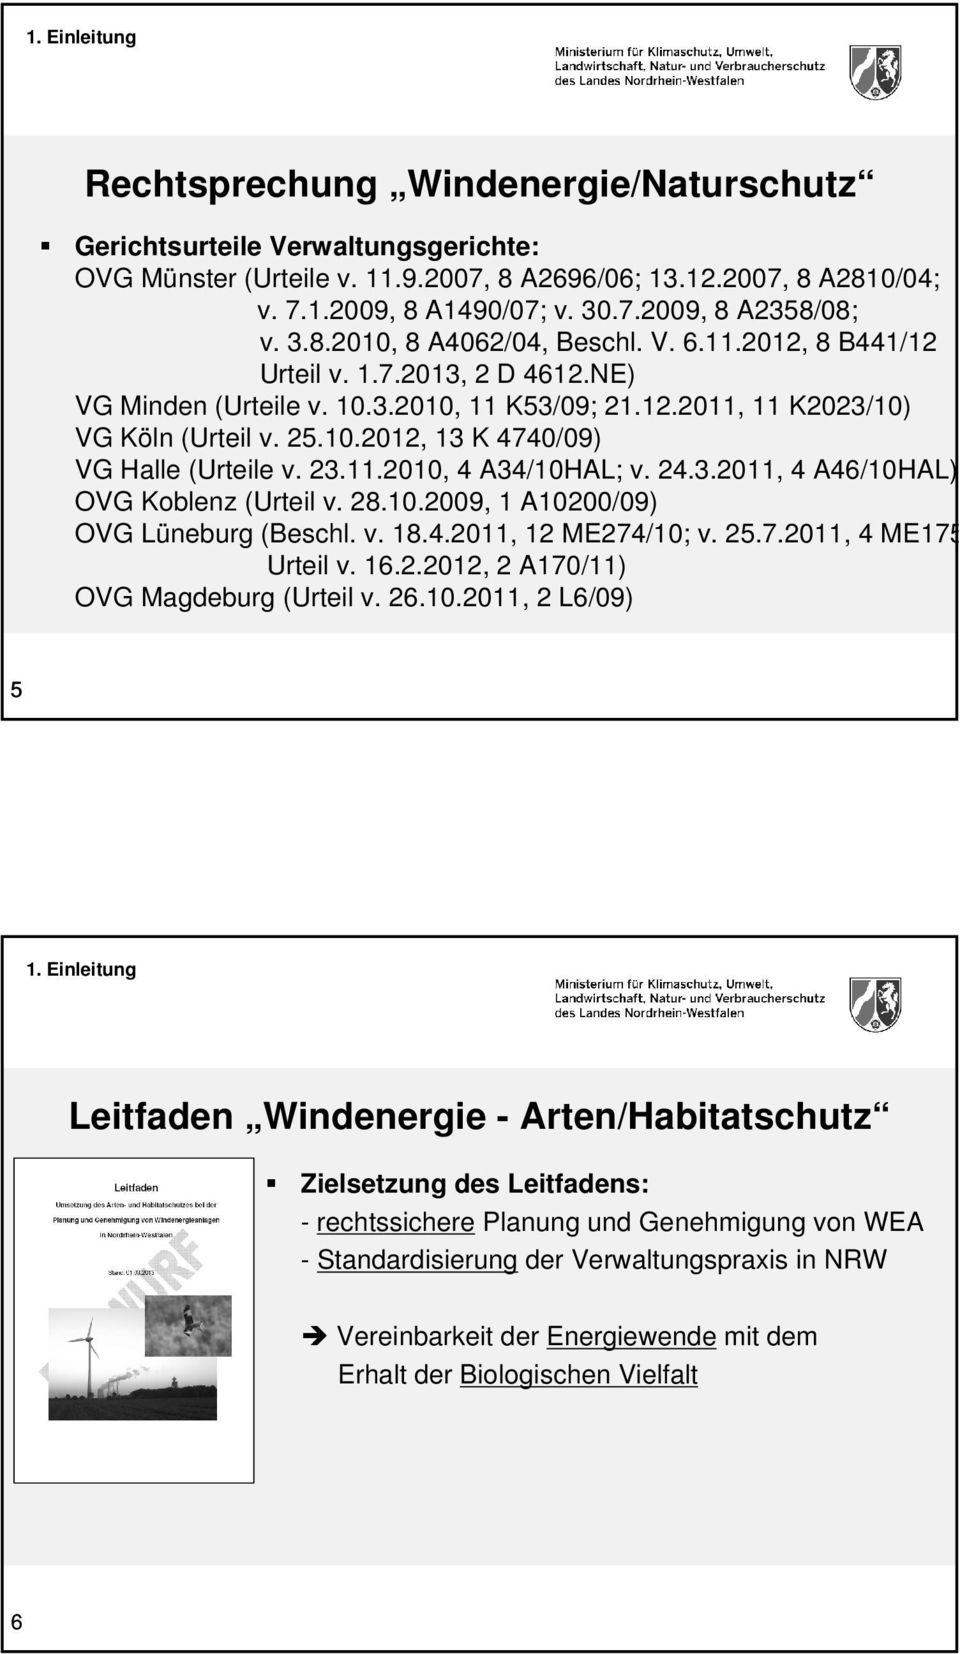 23.11.2010, 4 A34/10HAL; v. 24.3.2011, 4 A46/10HAL) OVG Koblenz (Urteil v. 28.10.2009, 1 A10200/09) OVG Lüneburg (Beschl. v. 18.4.2011, 12 ME274/10; v. 25.7.2011, 4 ME175/11 Urteil v. 16.2.2012, 2 A170/11) OVG Magdeburg (Urteil v.